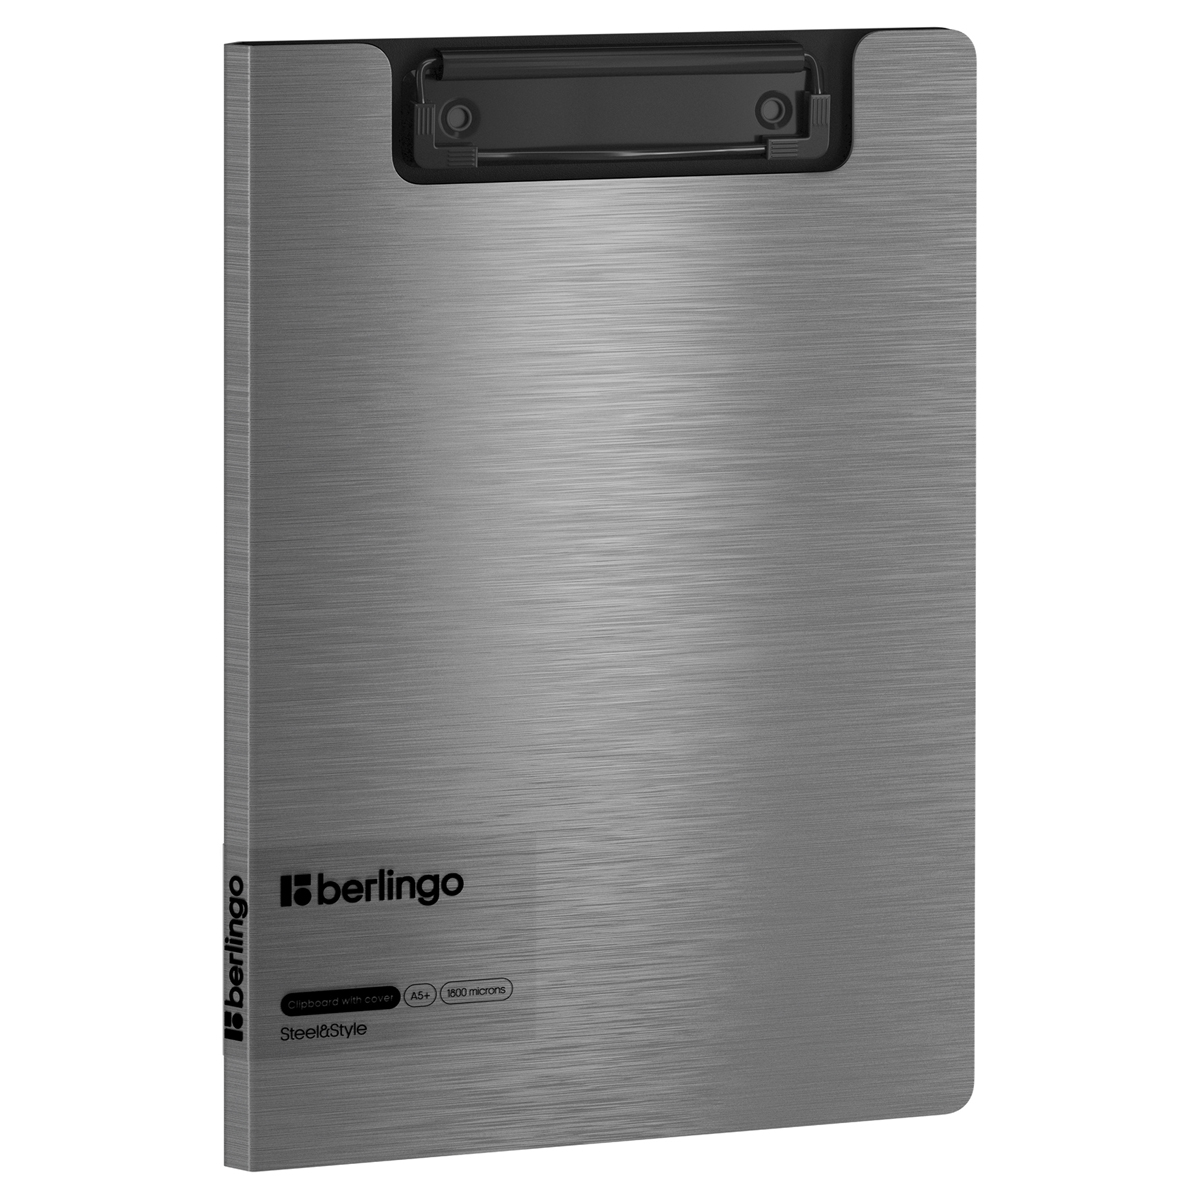 Папка-планшет с зажимом Berlingo "Steel&Style" А5+, 1800мкм, пластик (полифом), серебристый металлик